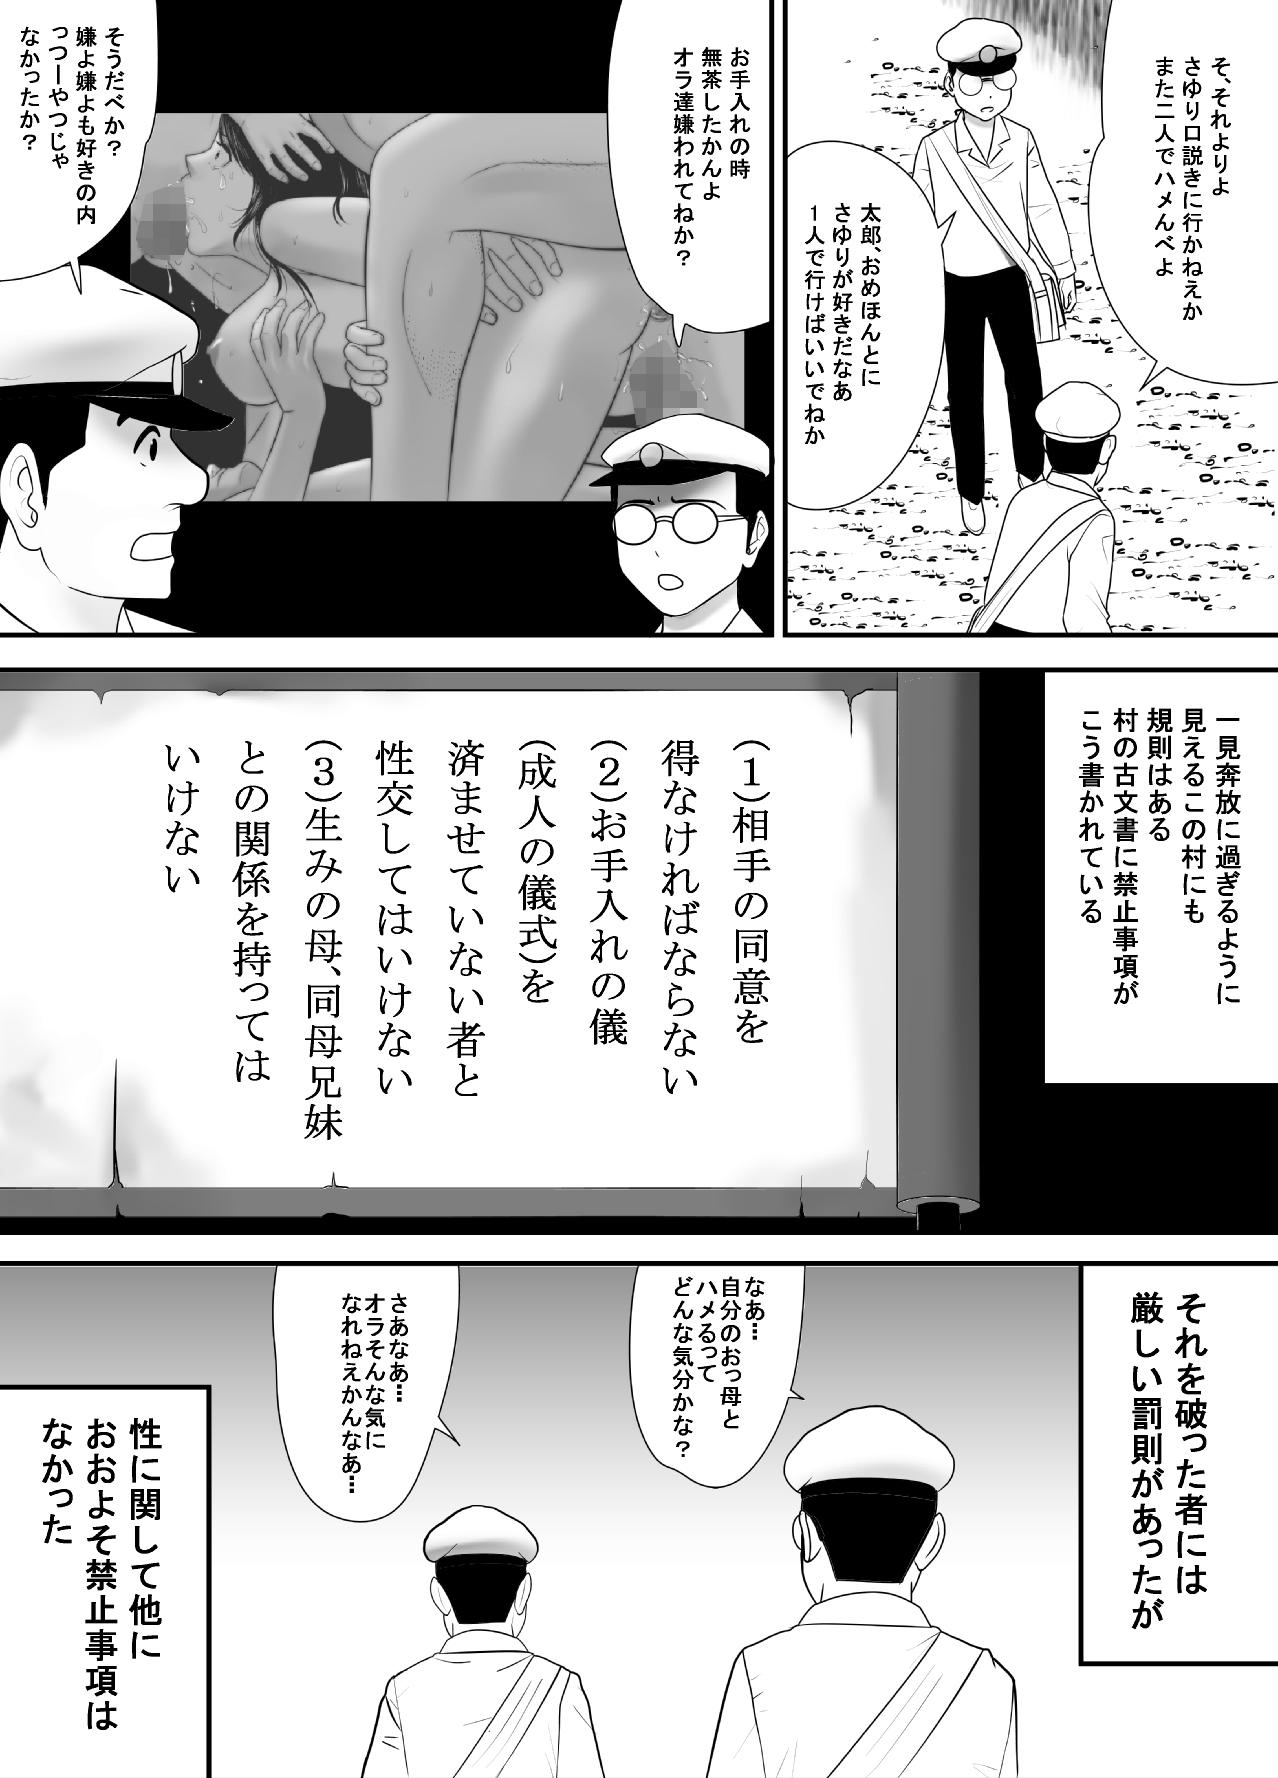 Grandma Subete o Ukeirete Kureru Tomodachi no Okka-san - Original Muscle - Page 8